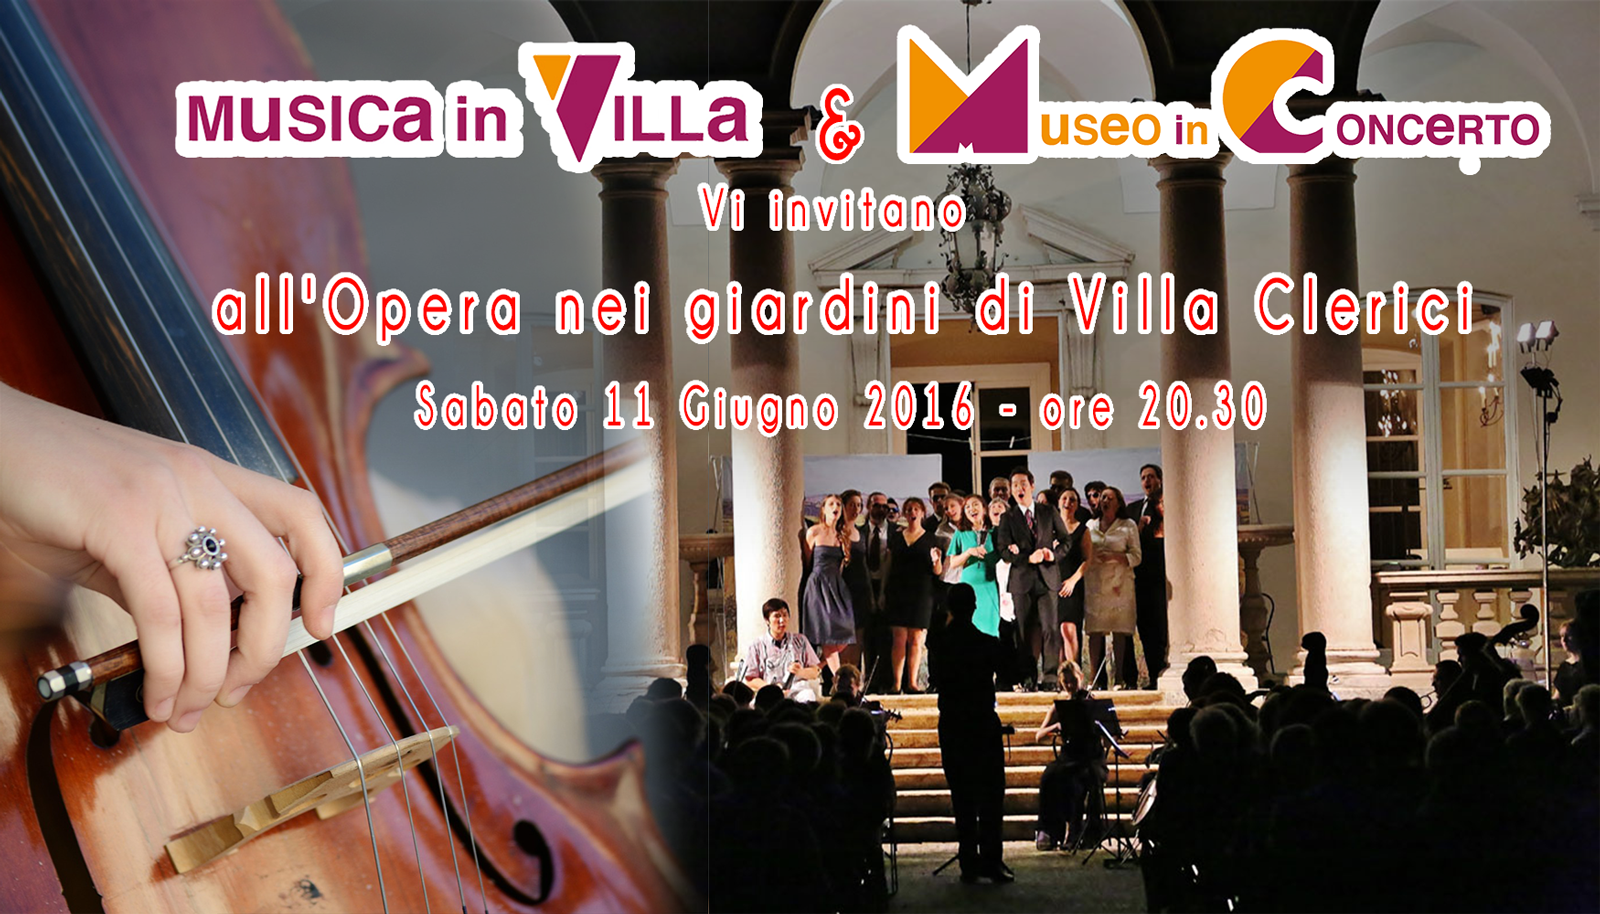 VillaClericiMusica